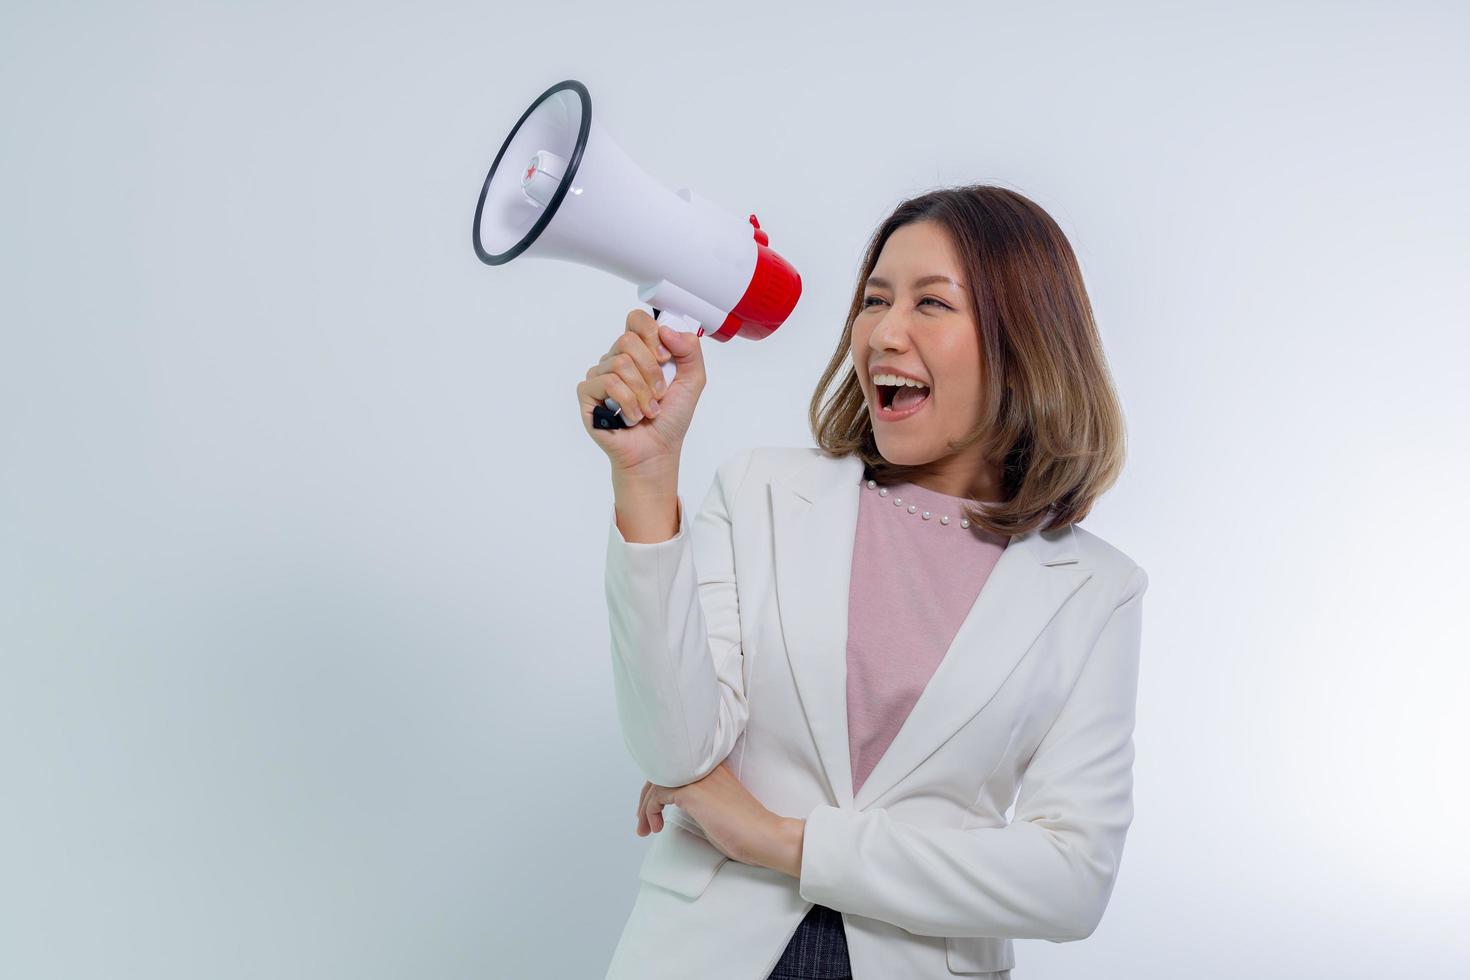 mujer asiática sosteniendo megáfono, habla y anuncia el concepto. foto